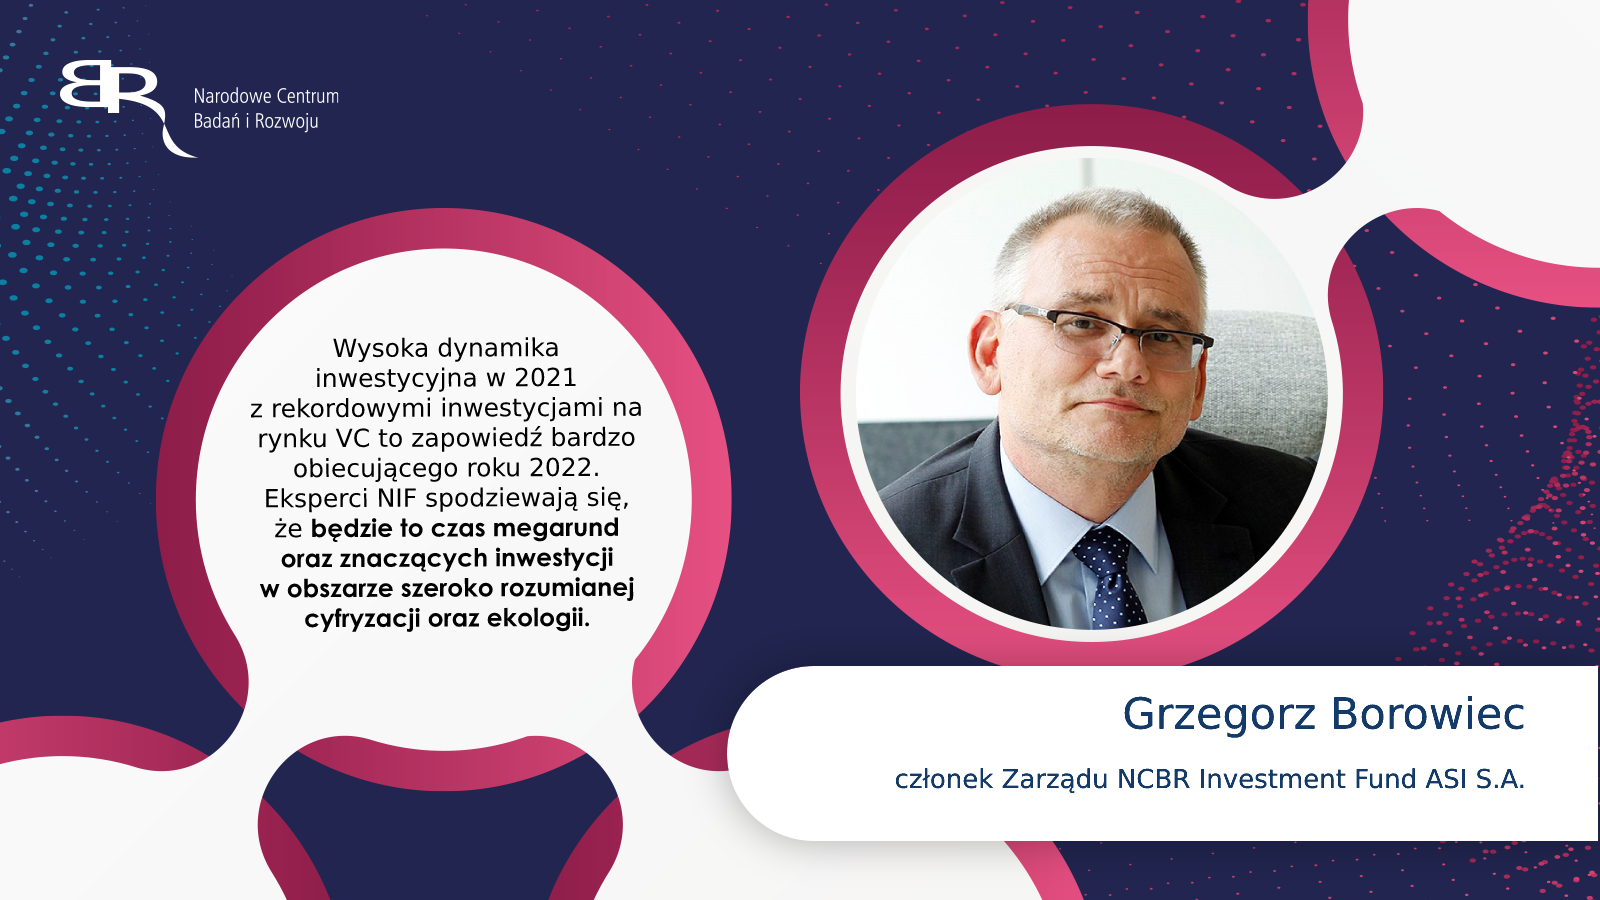 Grzegorz Borowiec - członek Zarządu NCBR Investment Fund ASI S.A.